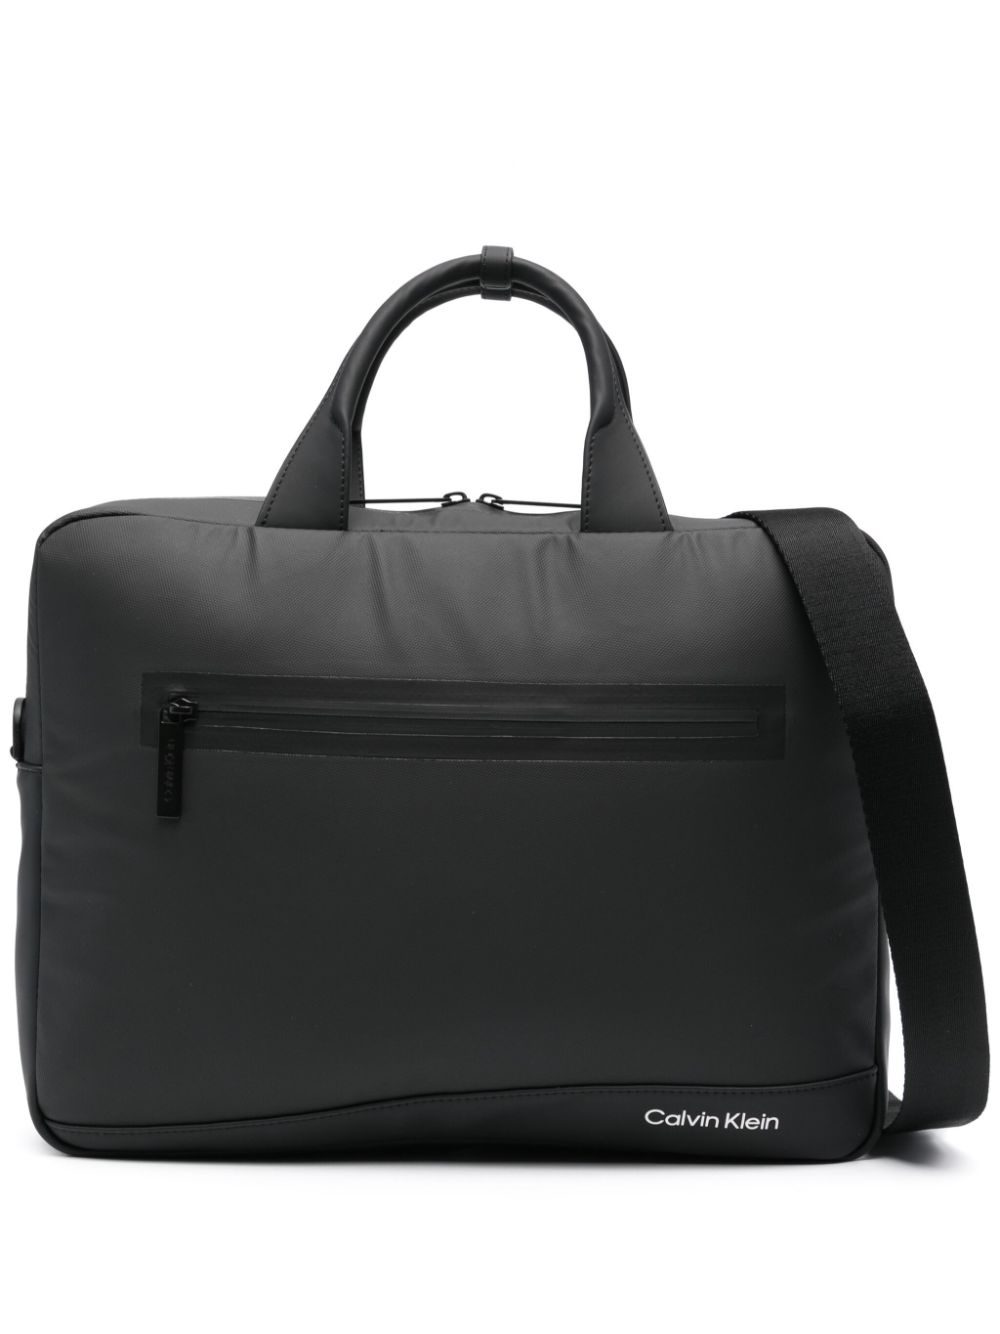 Calvin Klein Laptoptasche mit mehreren Riemen - Schwarz